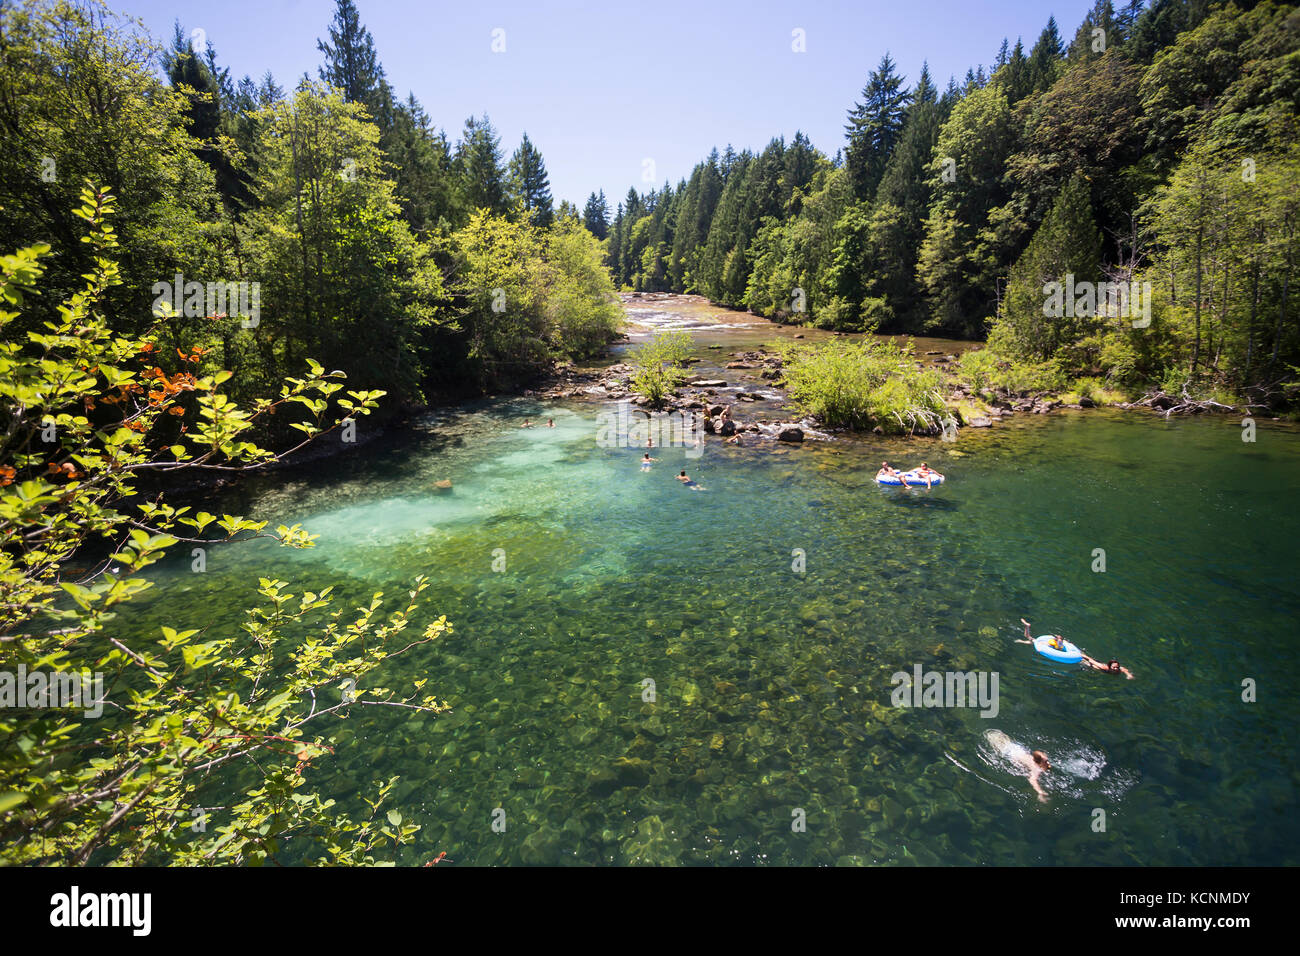 Chi cerca il sole e chi nuota si sposta a Barbers Hole lungo il fiume Oyster, una popolare area per nuotare nella Comox Valley. Isola di Vancouver Foto Stock